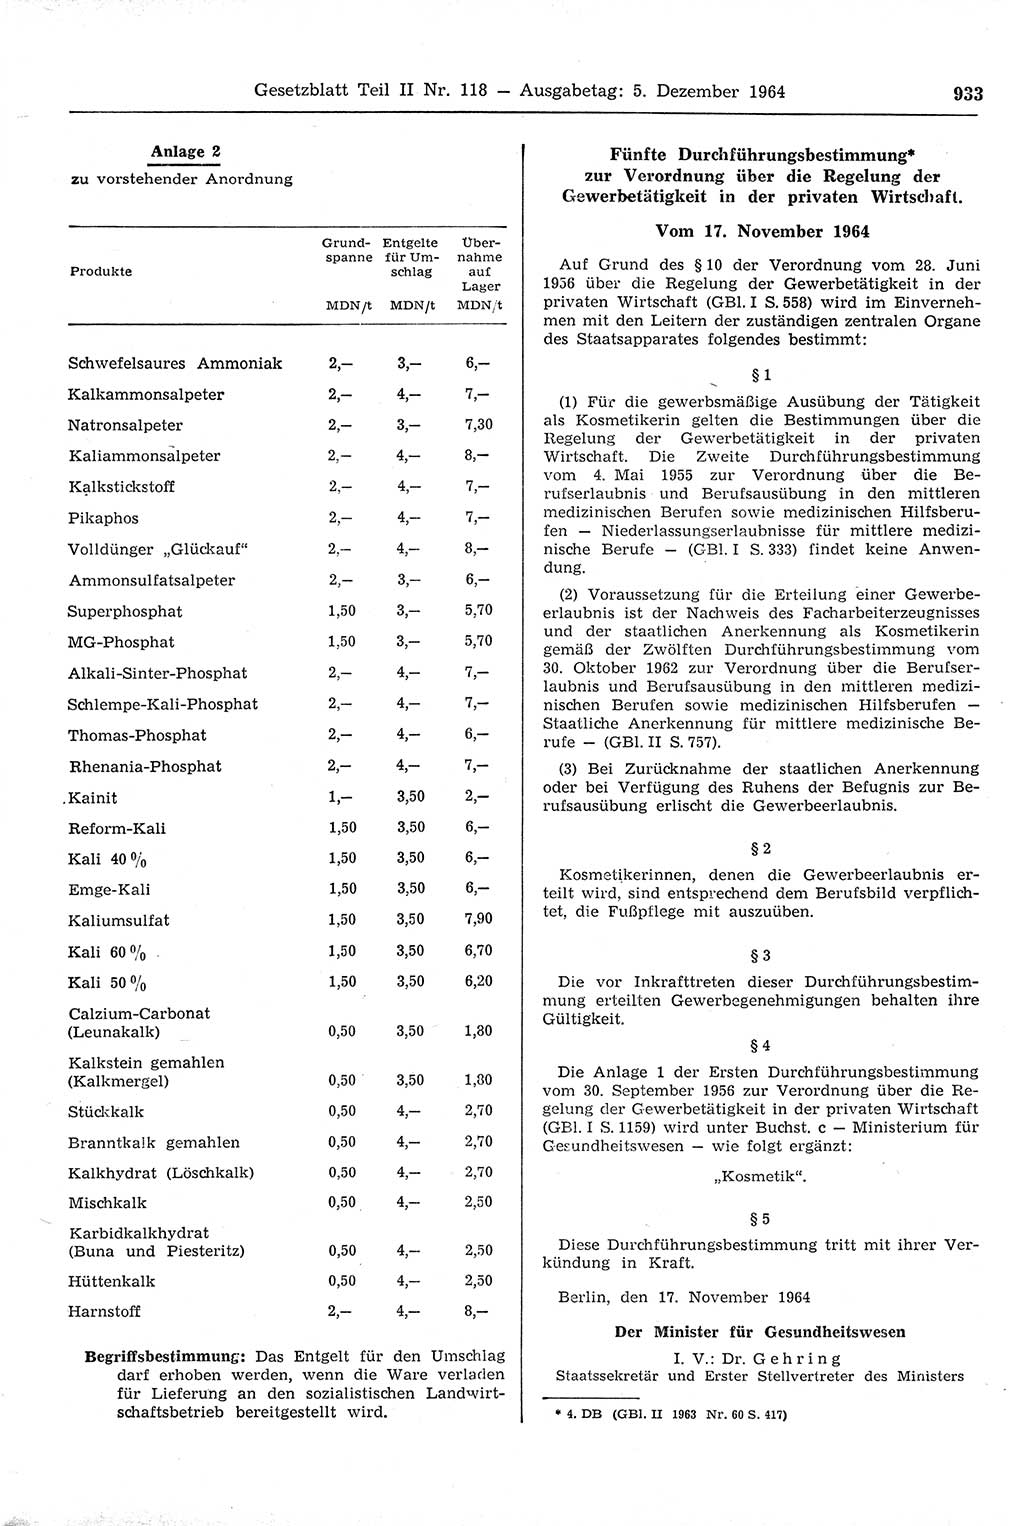 Gesetzblatt (GBl.) der Deutschen Demokratischen Republik (DDR) Teil ⅠⅠ 1964, Seite 933 (GBl. DDR ⅠⅠ 1964, S. 933)